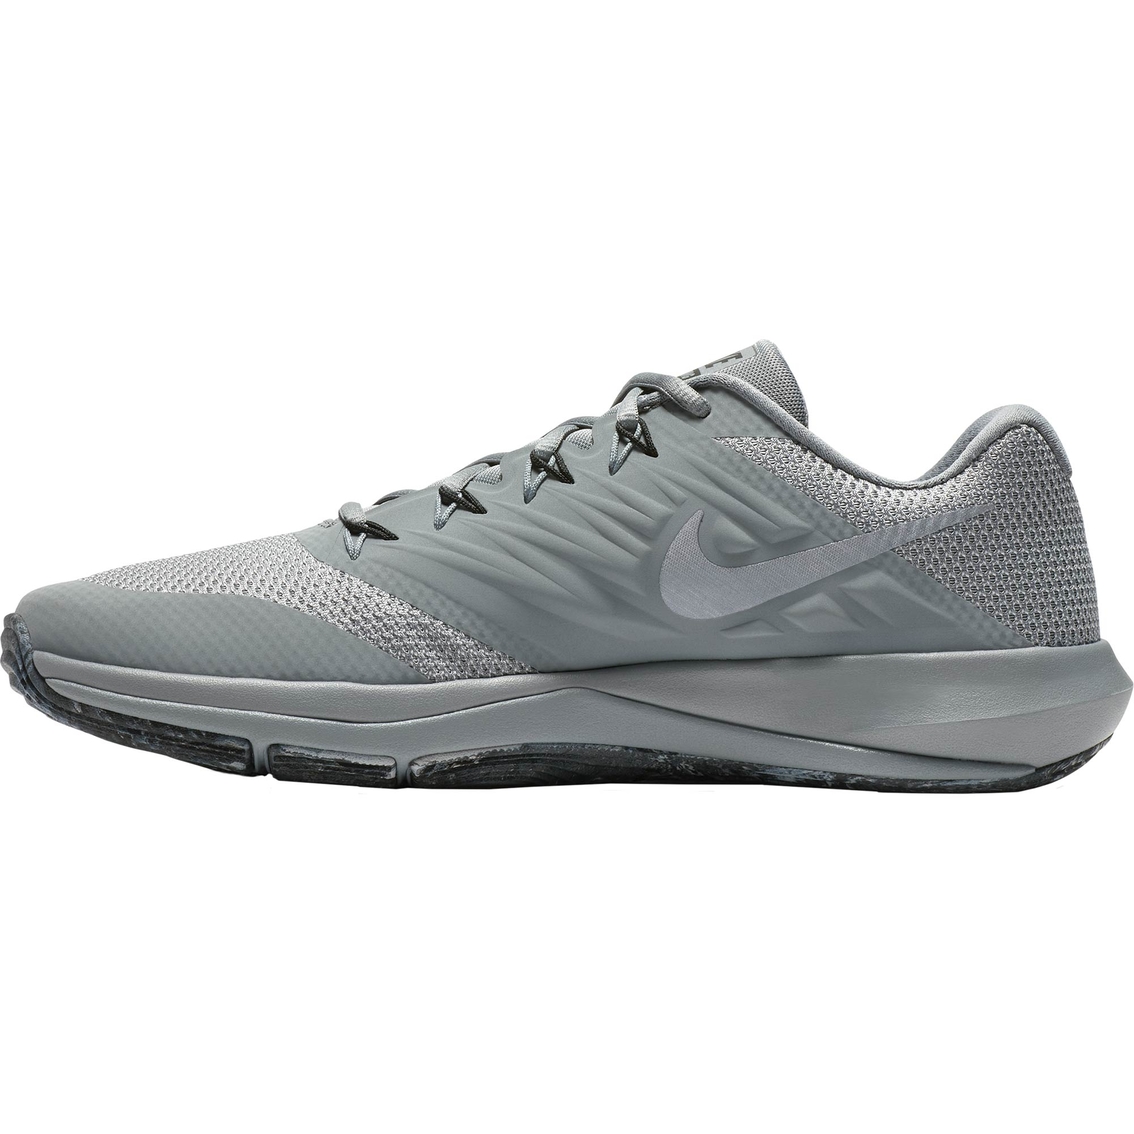 Nike Men's Lunar Prime Iron Training Shoes | Men's Athletic Shoes | Shoes | Shop The Exchange